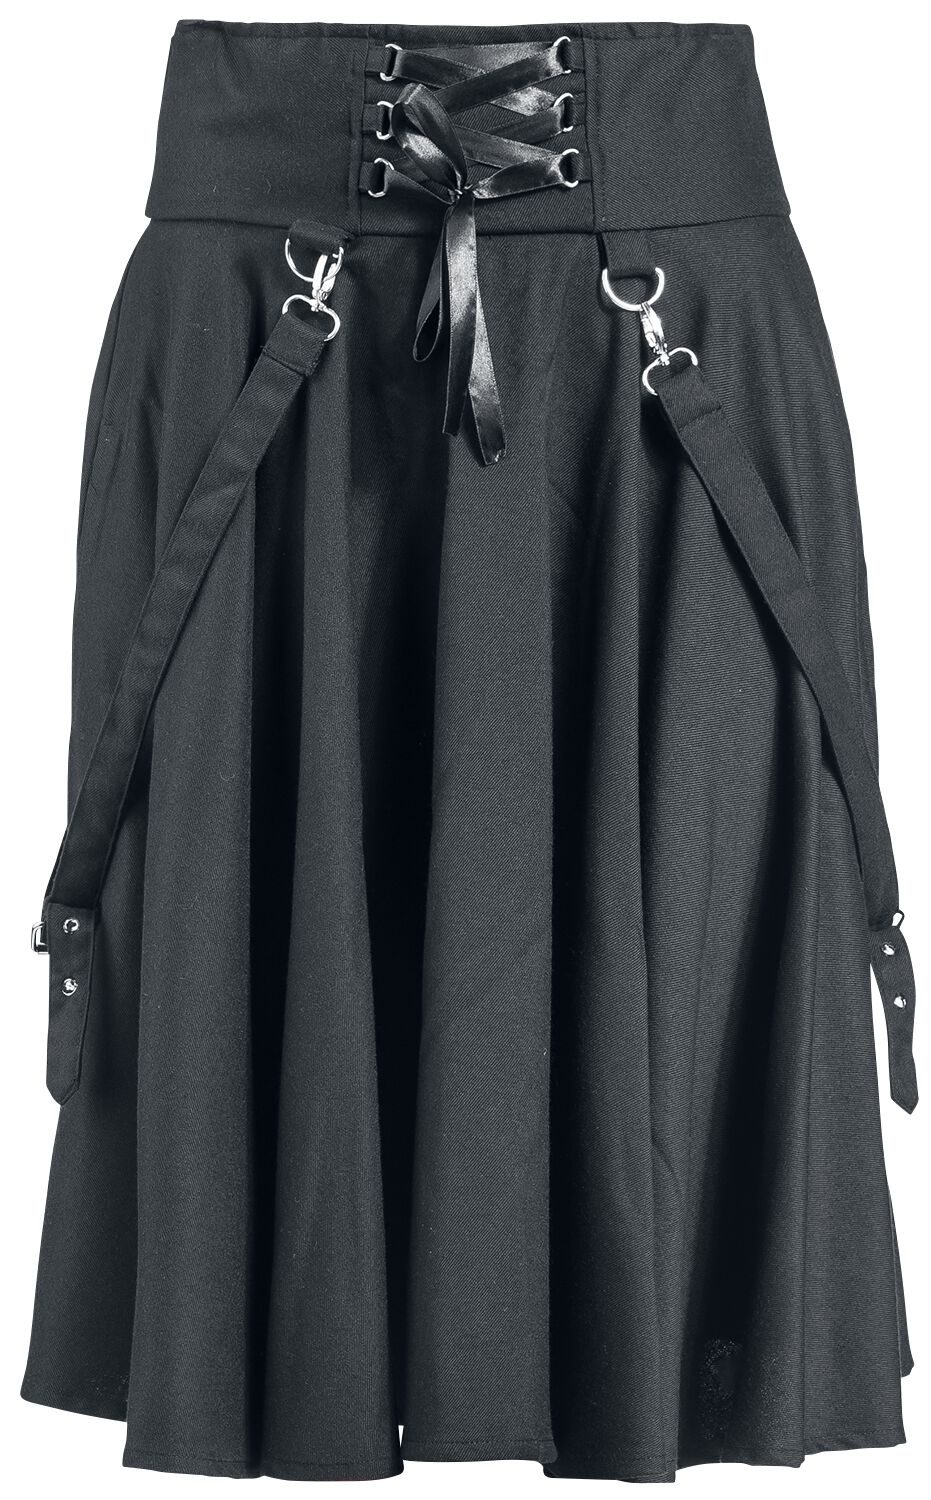 Chemical Black Seneca Skirt Medium-length skirt black